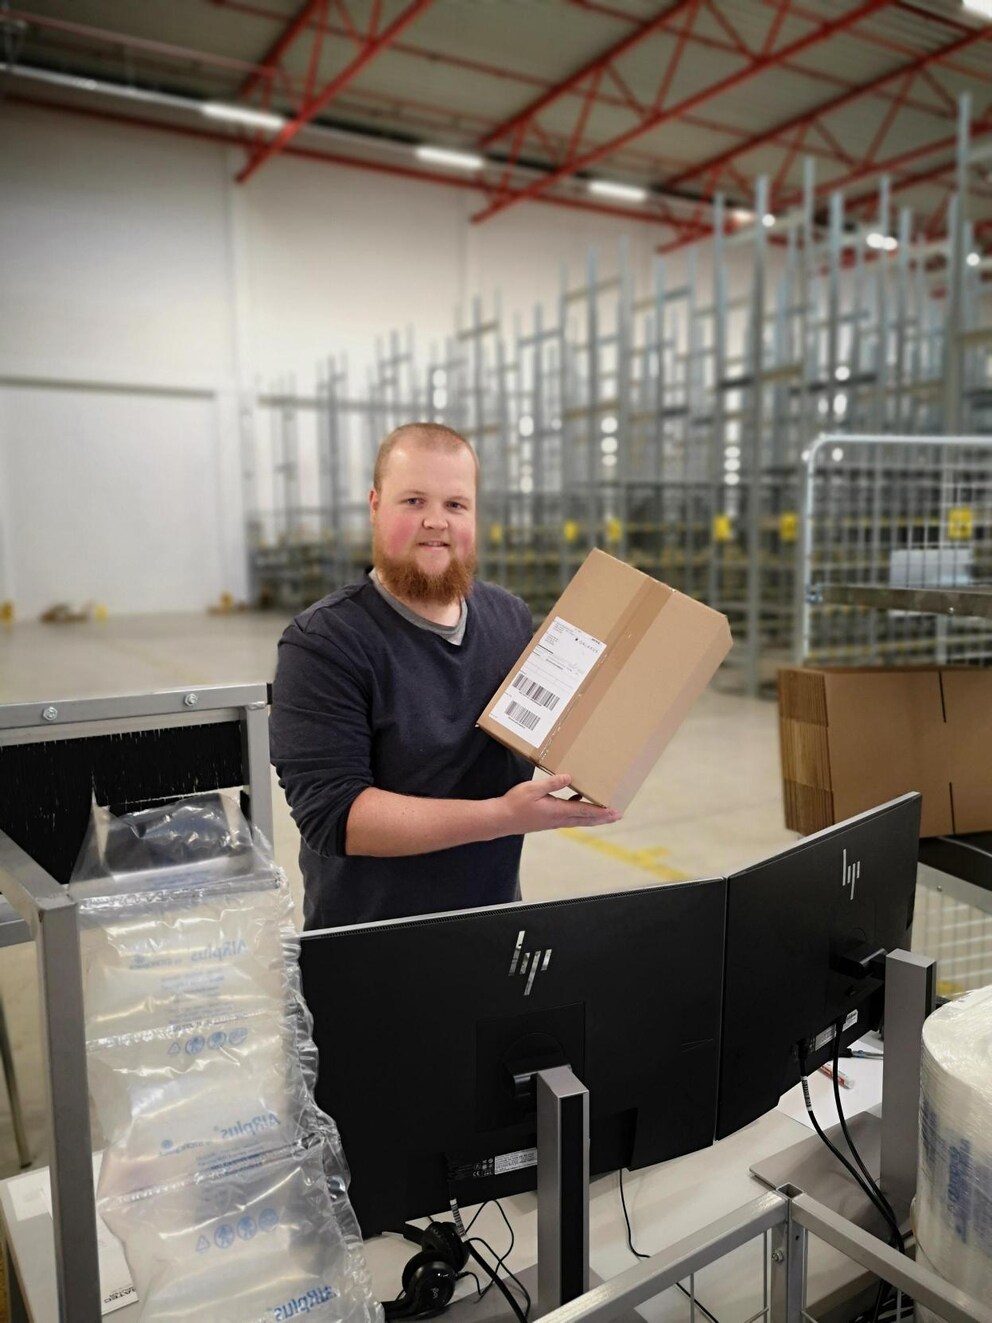 Steffen Beniers, che lavora ancora presso Galaxus come responsabile della logistica a Krefeld, ha spedito il primo pacco nel 2018.